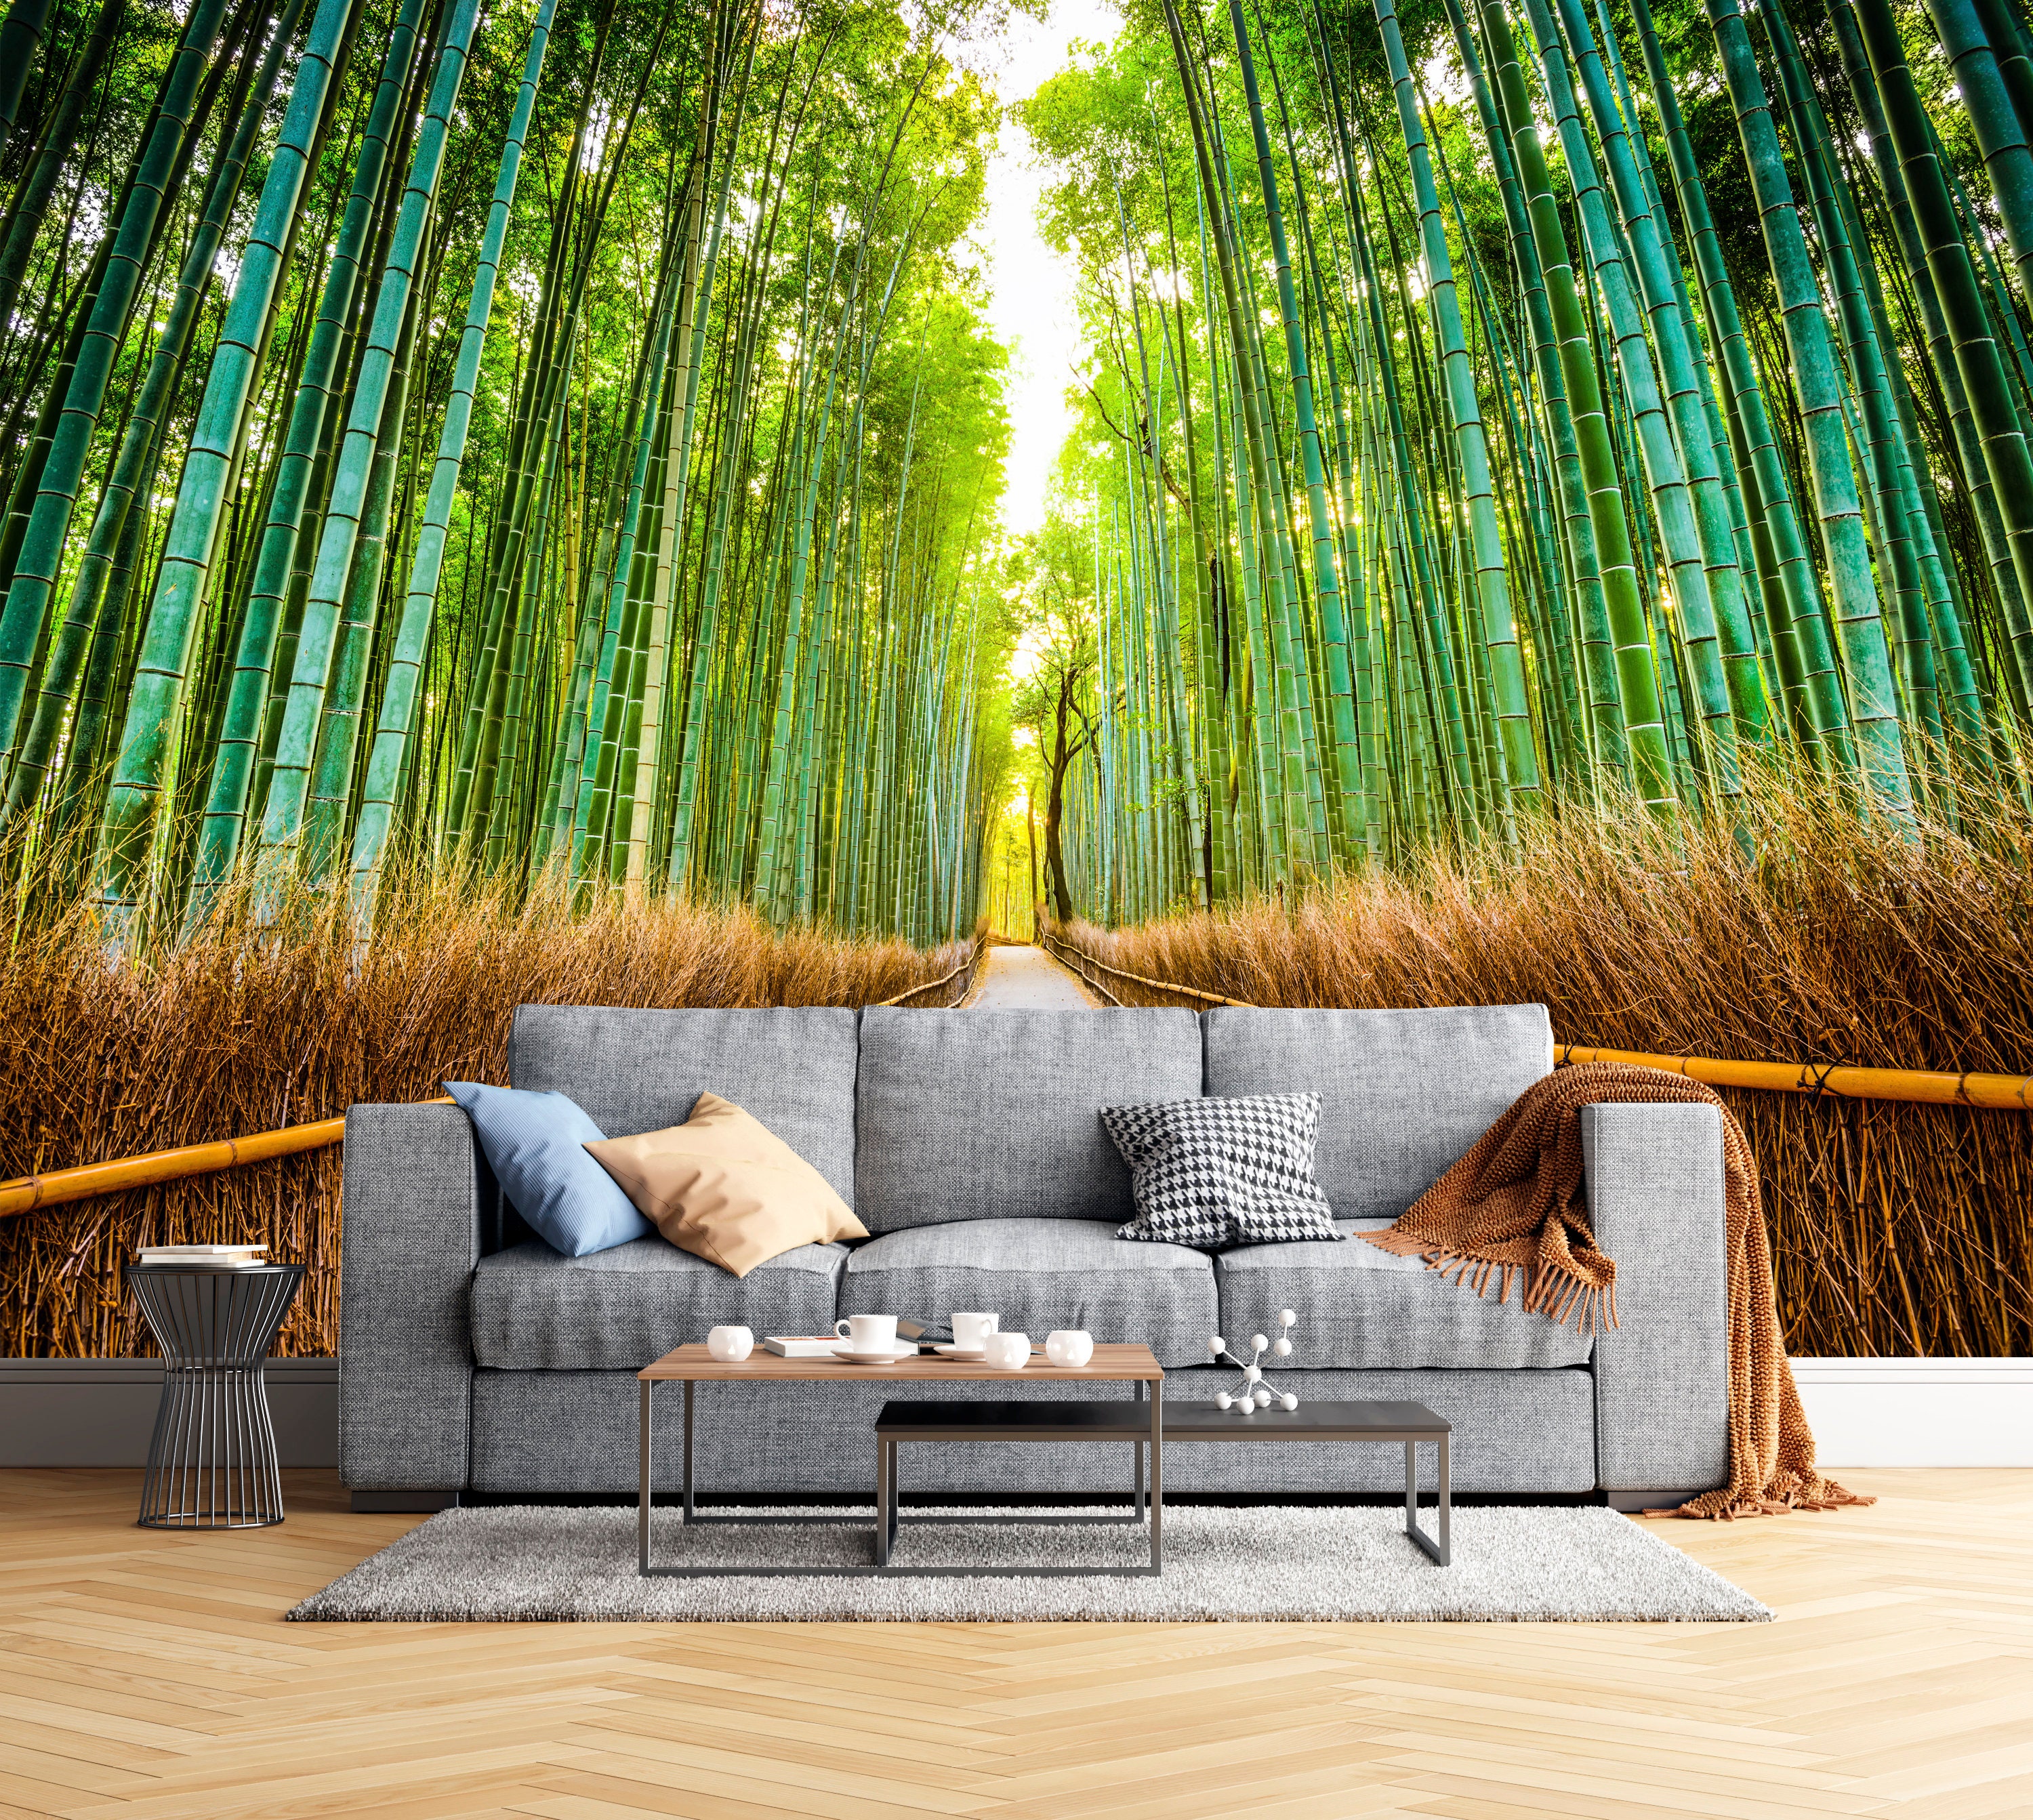 🥇 Zen meditation bamboo forest wallpaper or mural 🥇